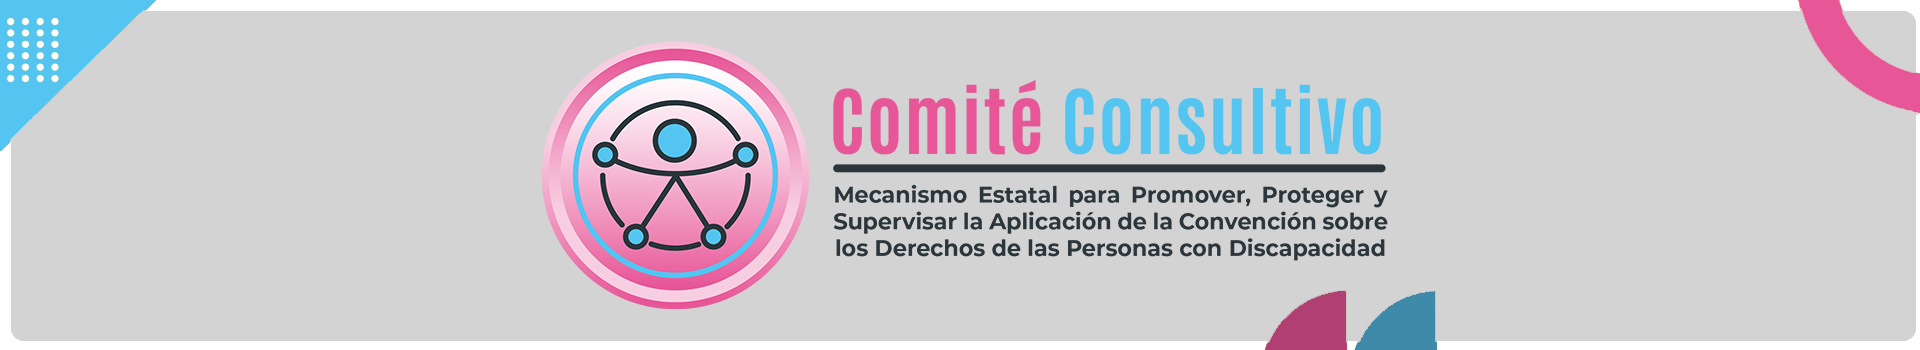 Banner principal del Comité Consultivo, mecanismo estatal para promover, proteger y supervisar la aplicación de la convención sobre los derechos de las personas con discapacidad